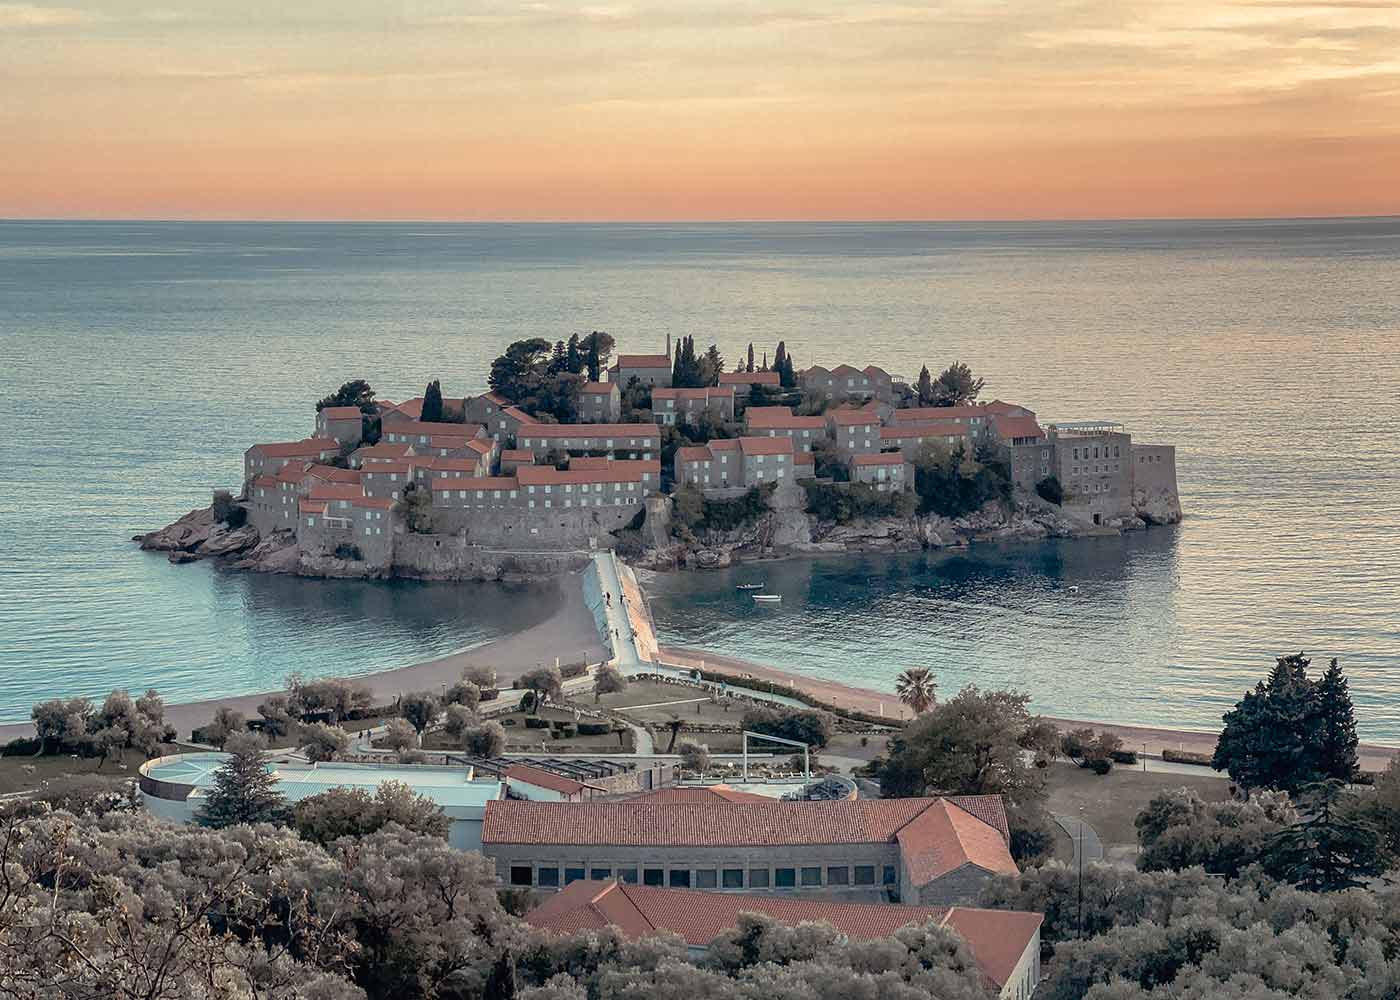 The view of St. Stefan island in Budva, Montenegro.